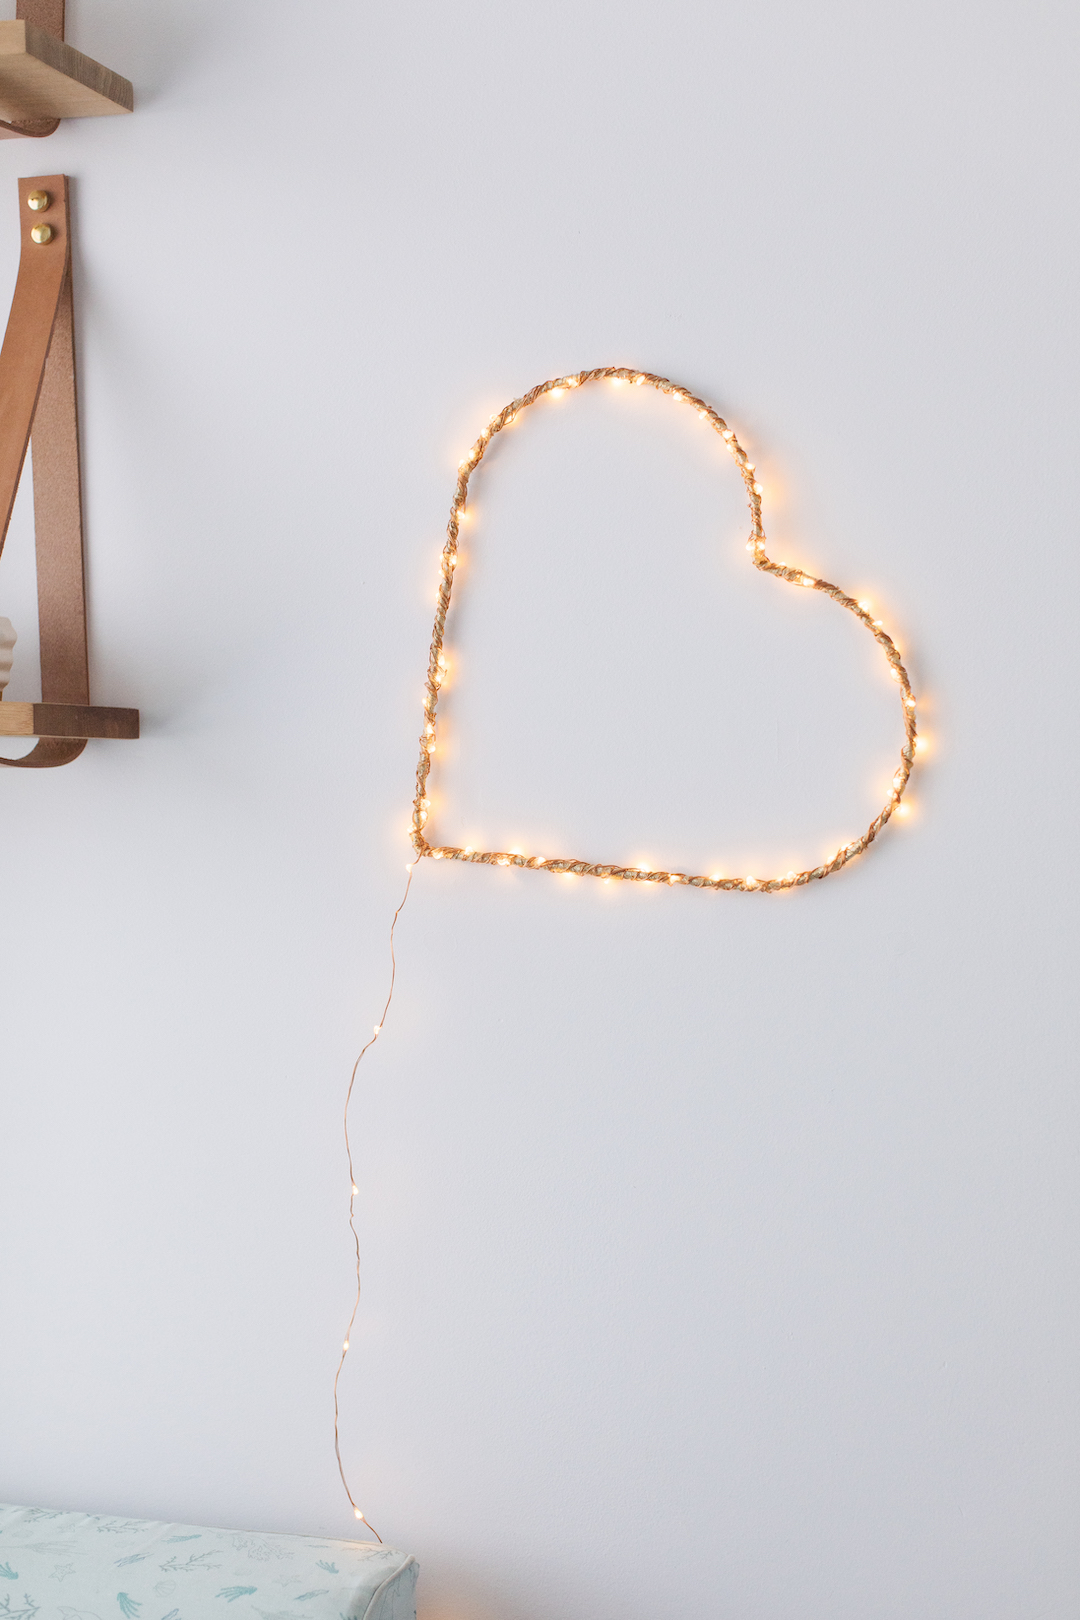 DIY heart wall light